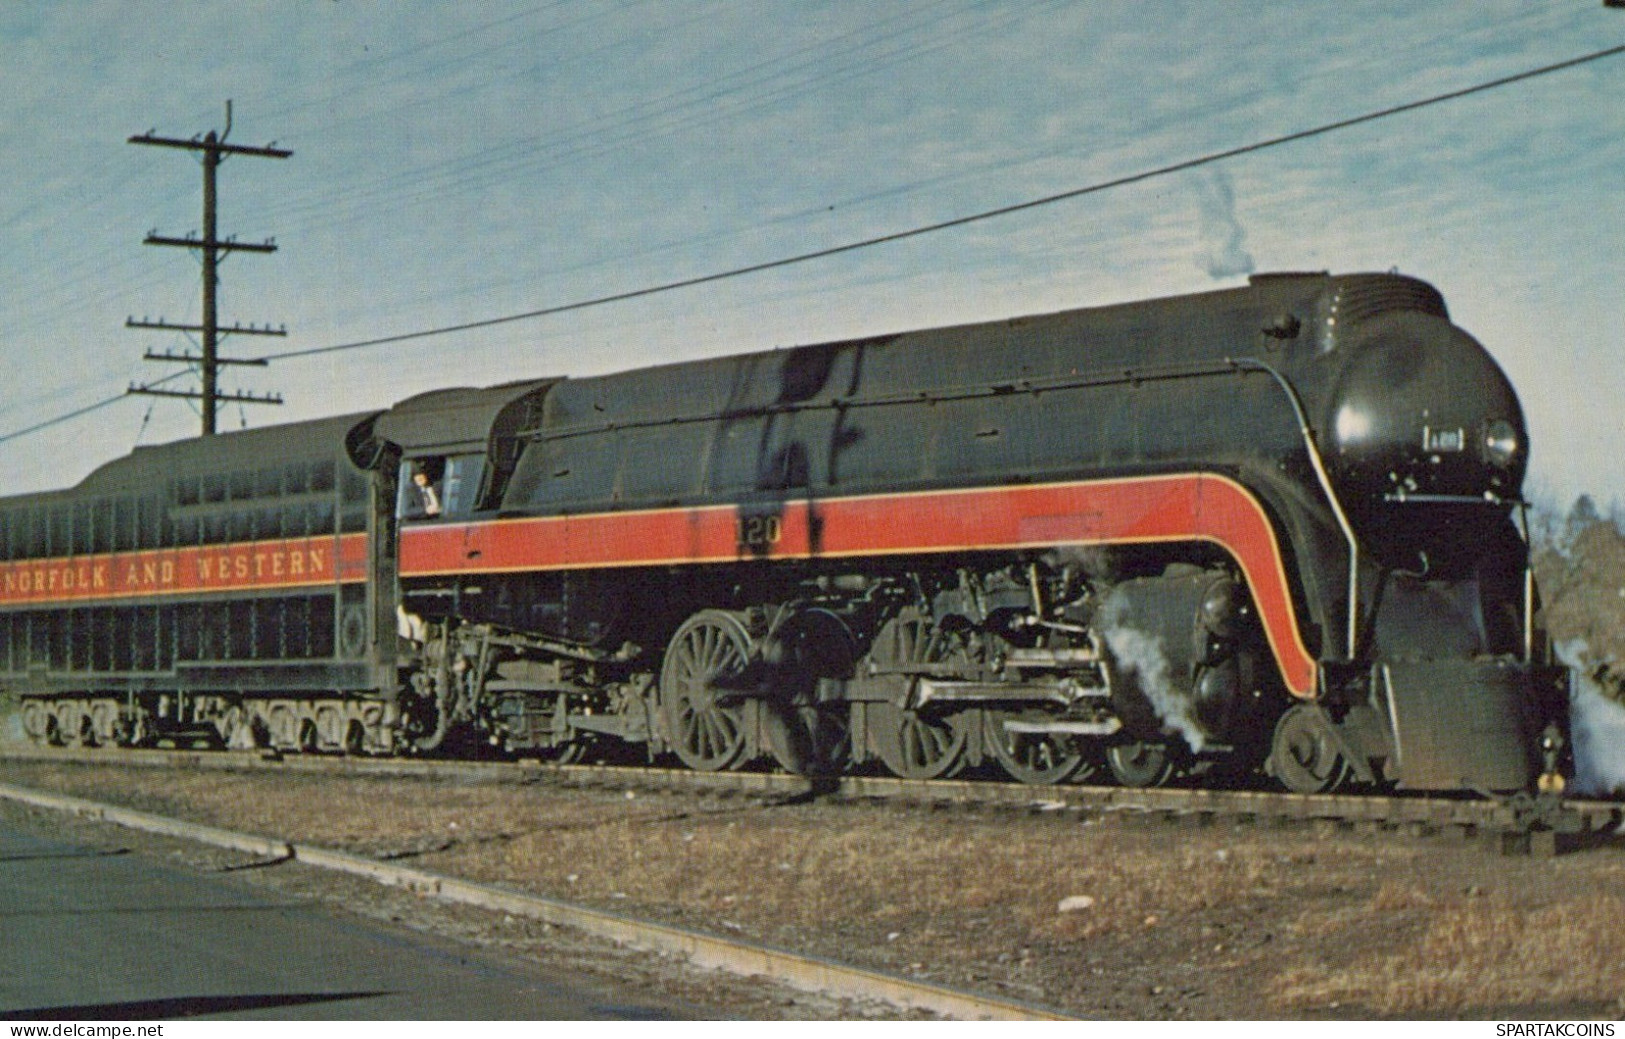 ZUG Schienenverkehr Eisenbahnen Vintage Ansichtskarte Postkarte CPSMF #PAA546.A - Eisenbahnen